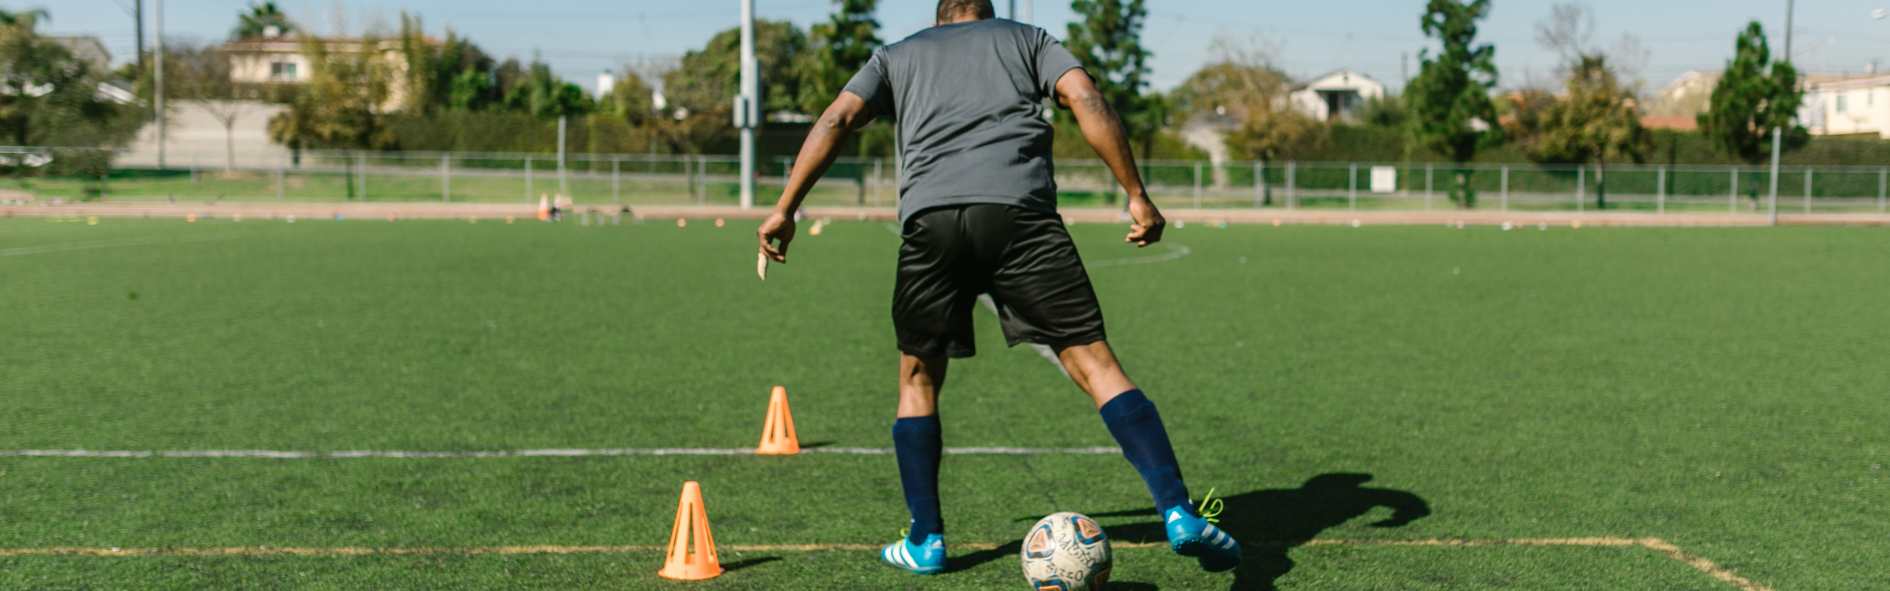 Conoce los beneficios del entrenamiento de fútbol, así como los diferentes tipos de ejercicios